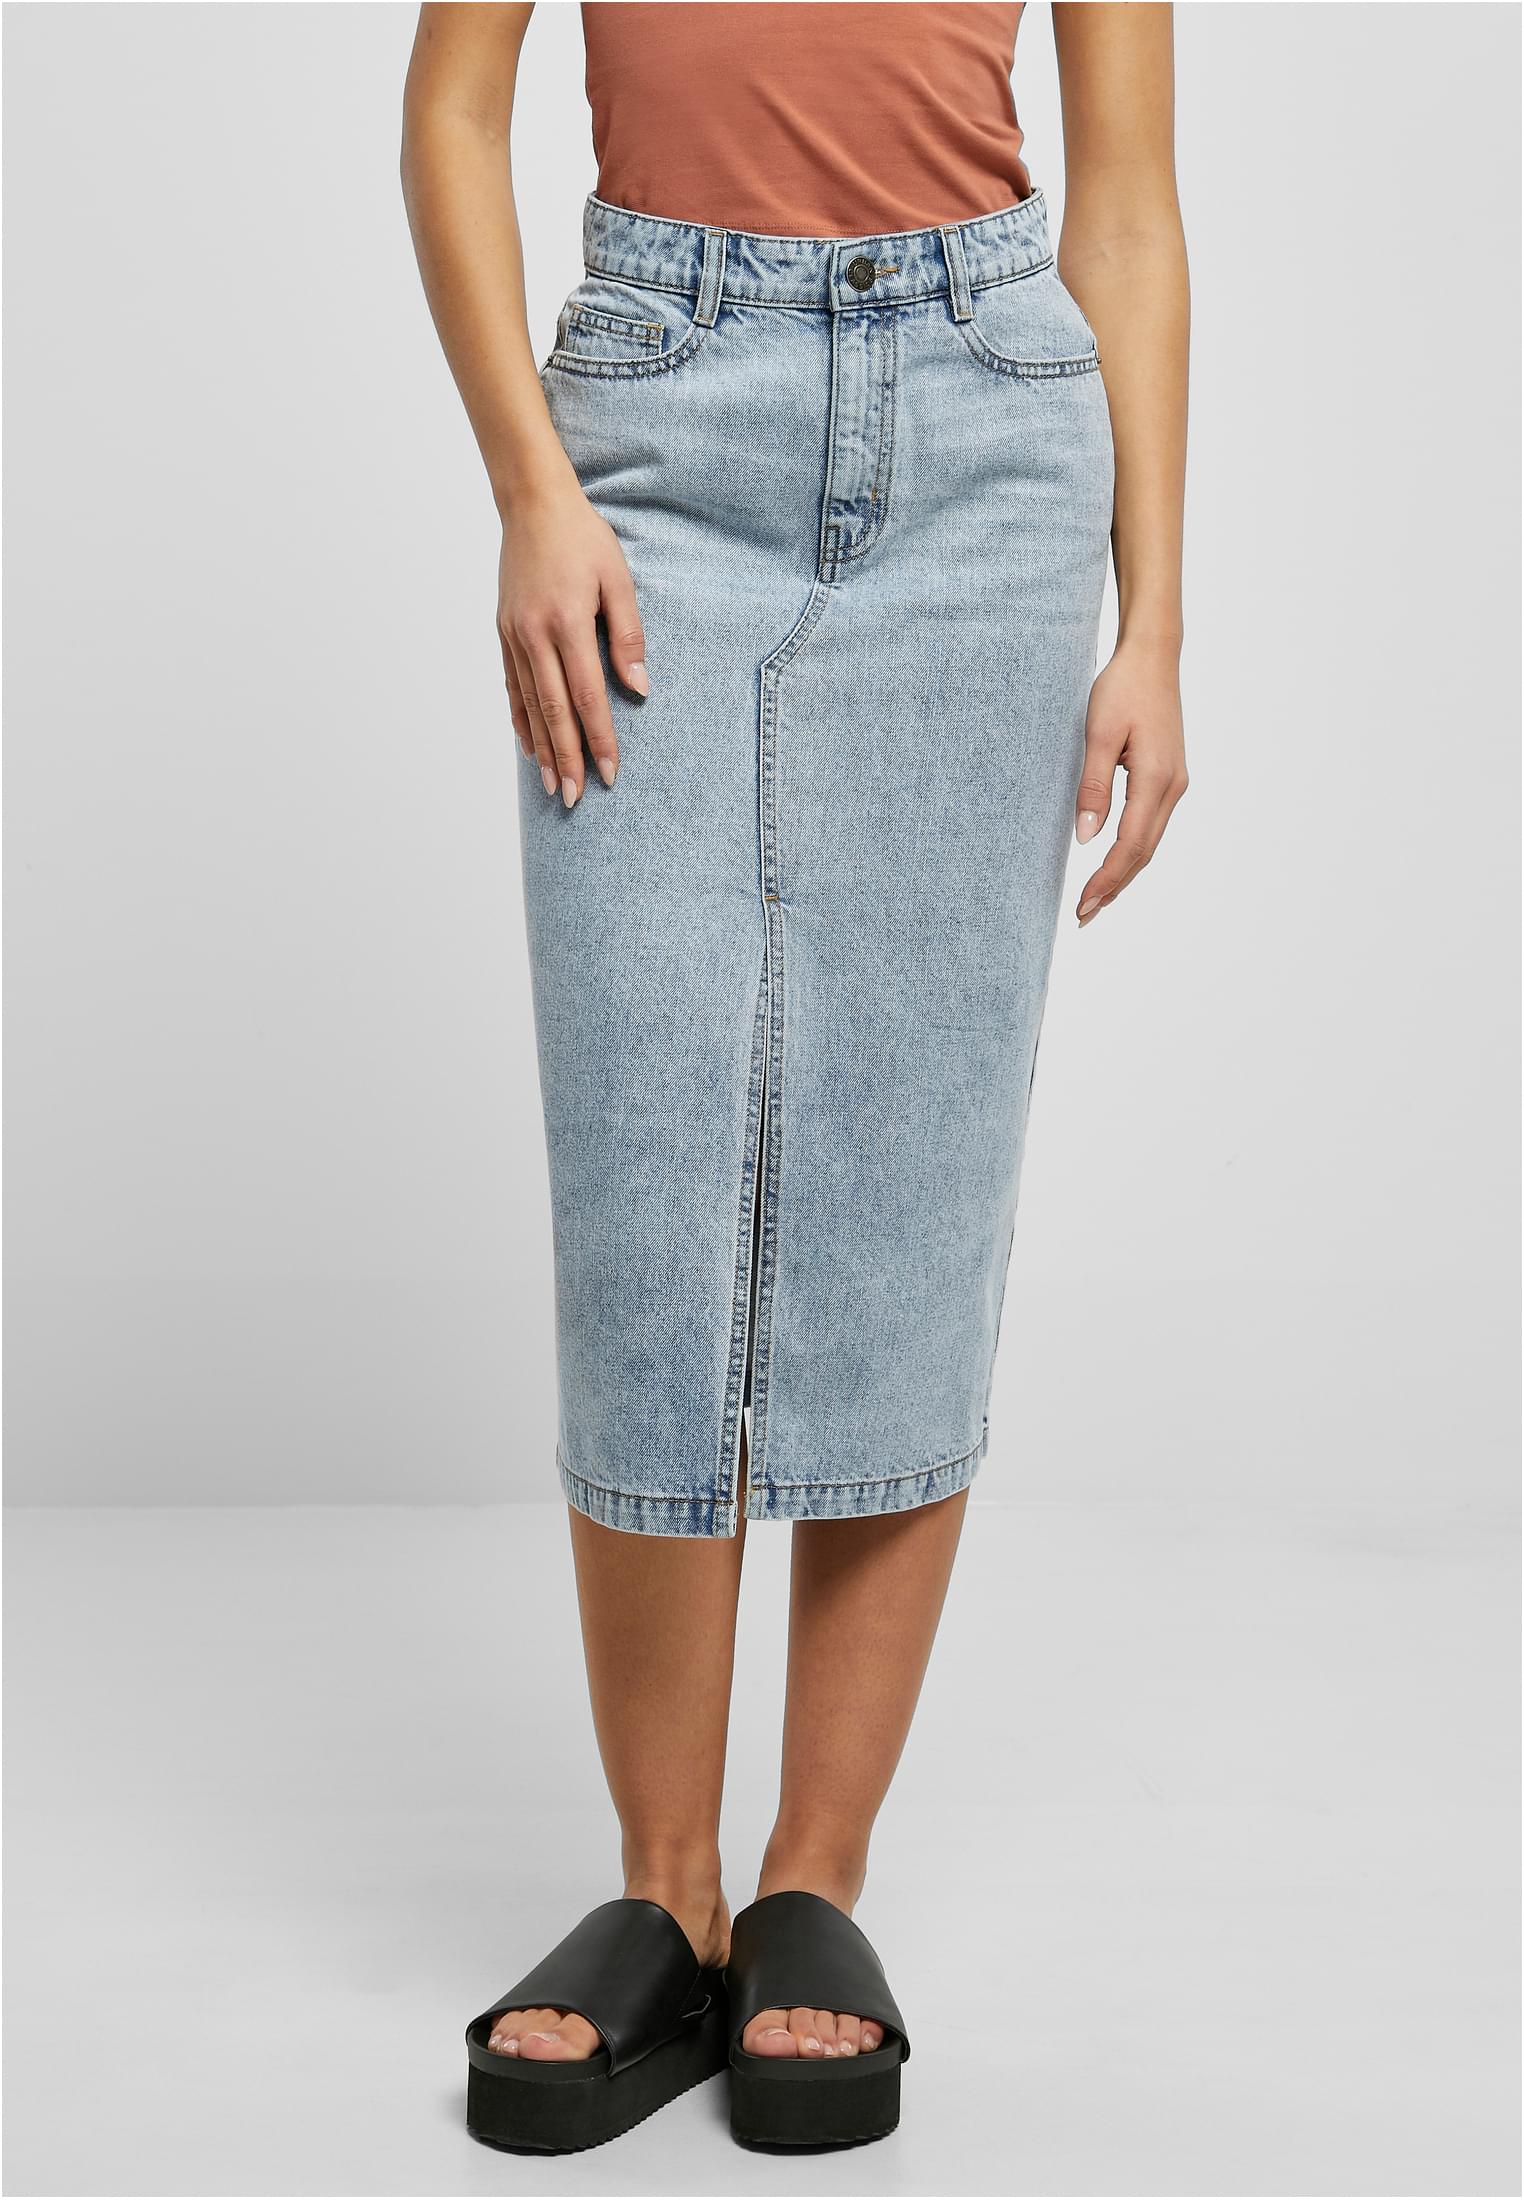 Women's midi denim skirt in a toned light blue wash